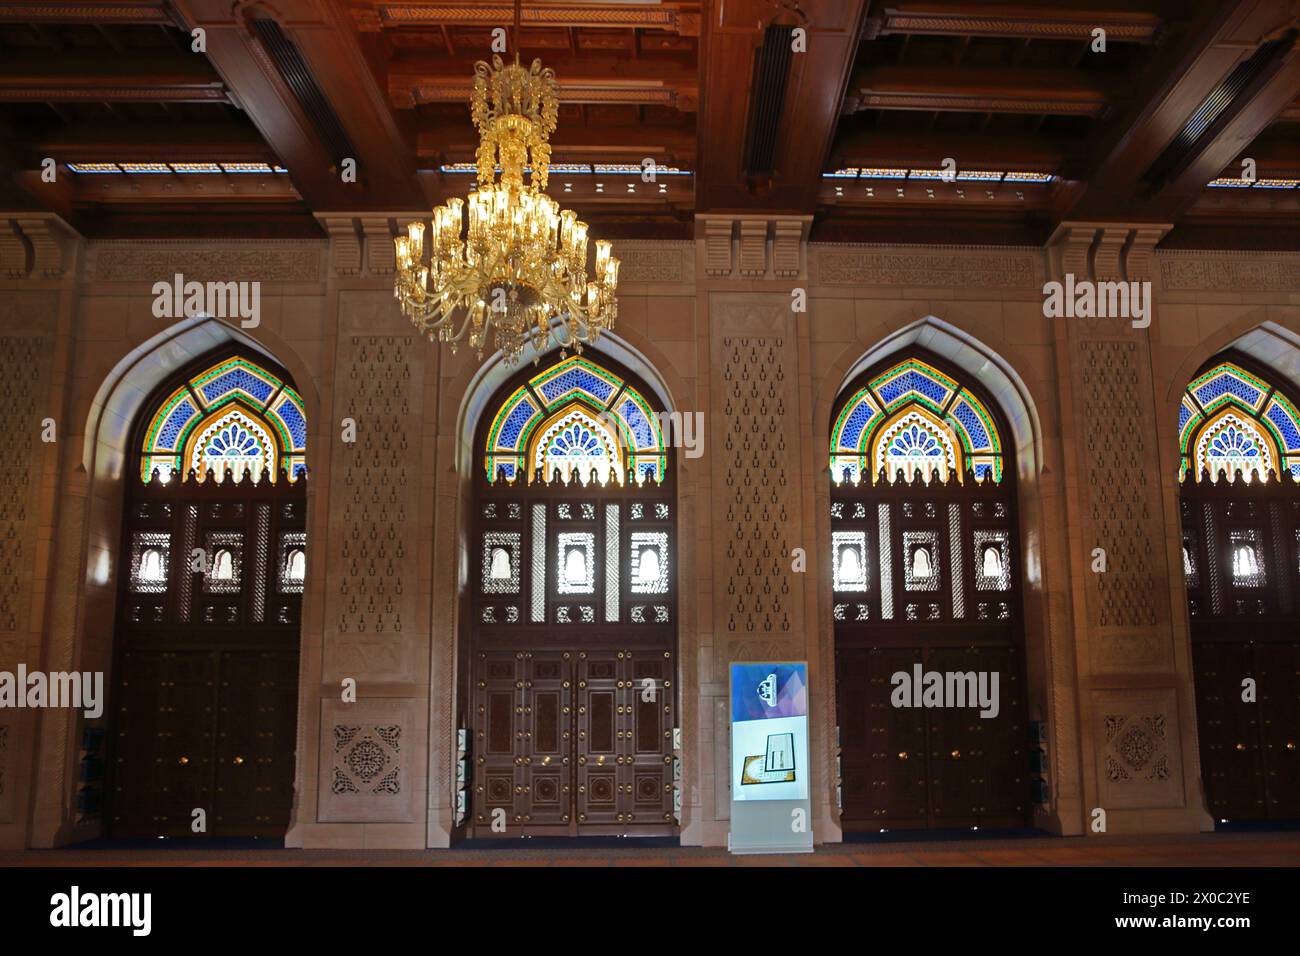 Sultan Qaboos Grand Mosquée intérieur de la salle de prière des femmes avec plafond omanais en bois et lustre Muscat Oman Banque D'Images